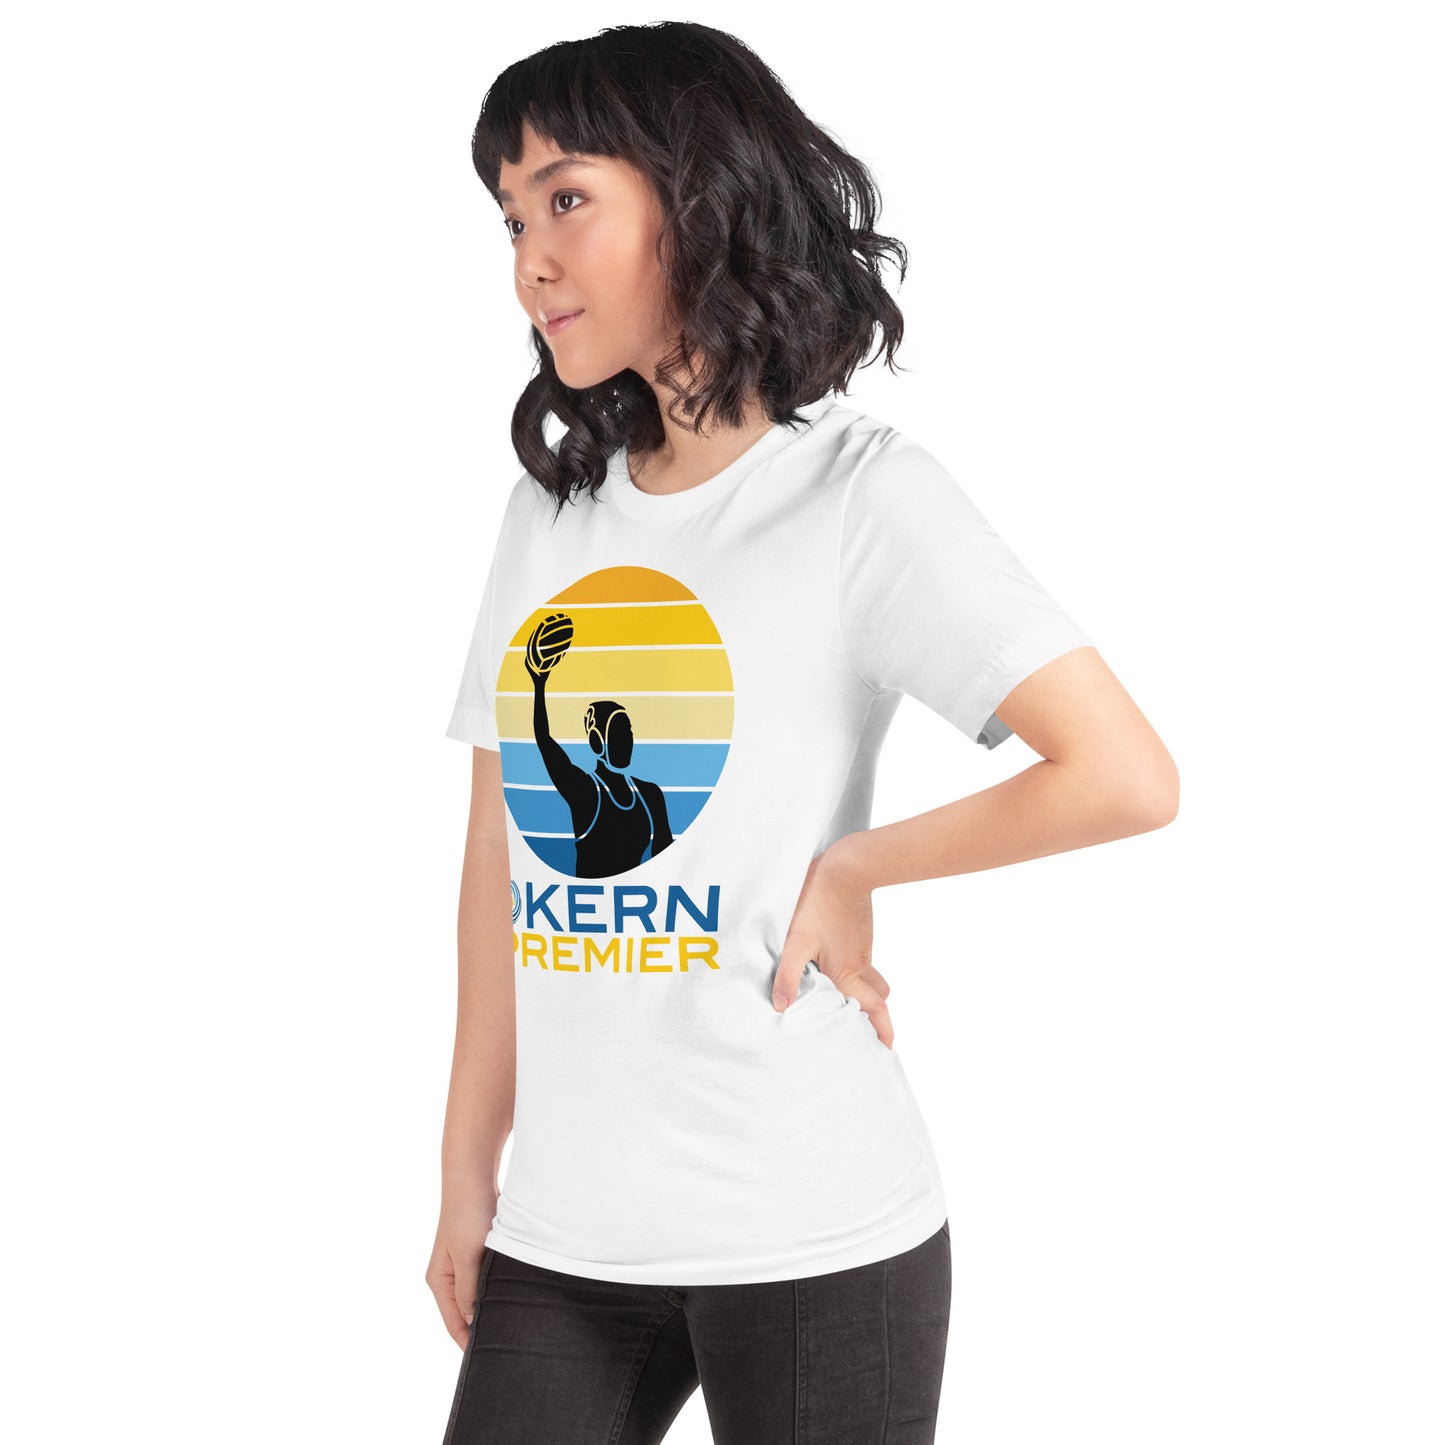 Kern Premier 5 color circle female silhouette - Unisex Soft T-shirt - Bella Canvas 3001